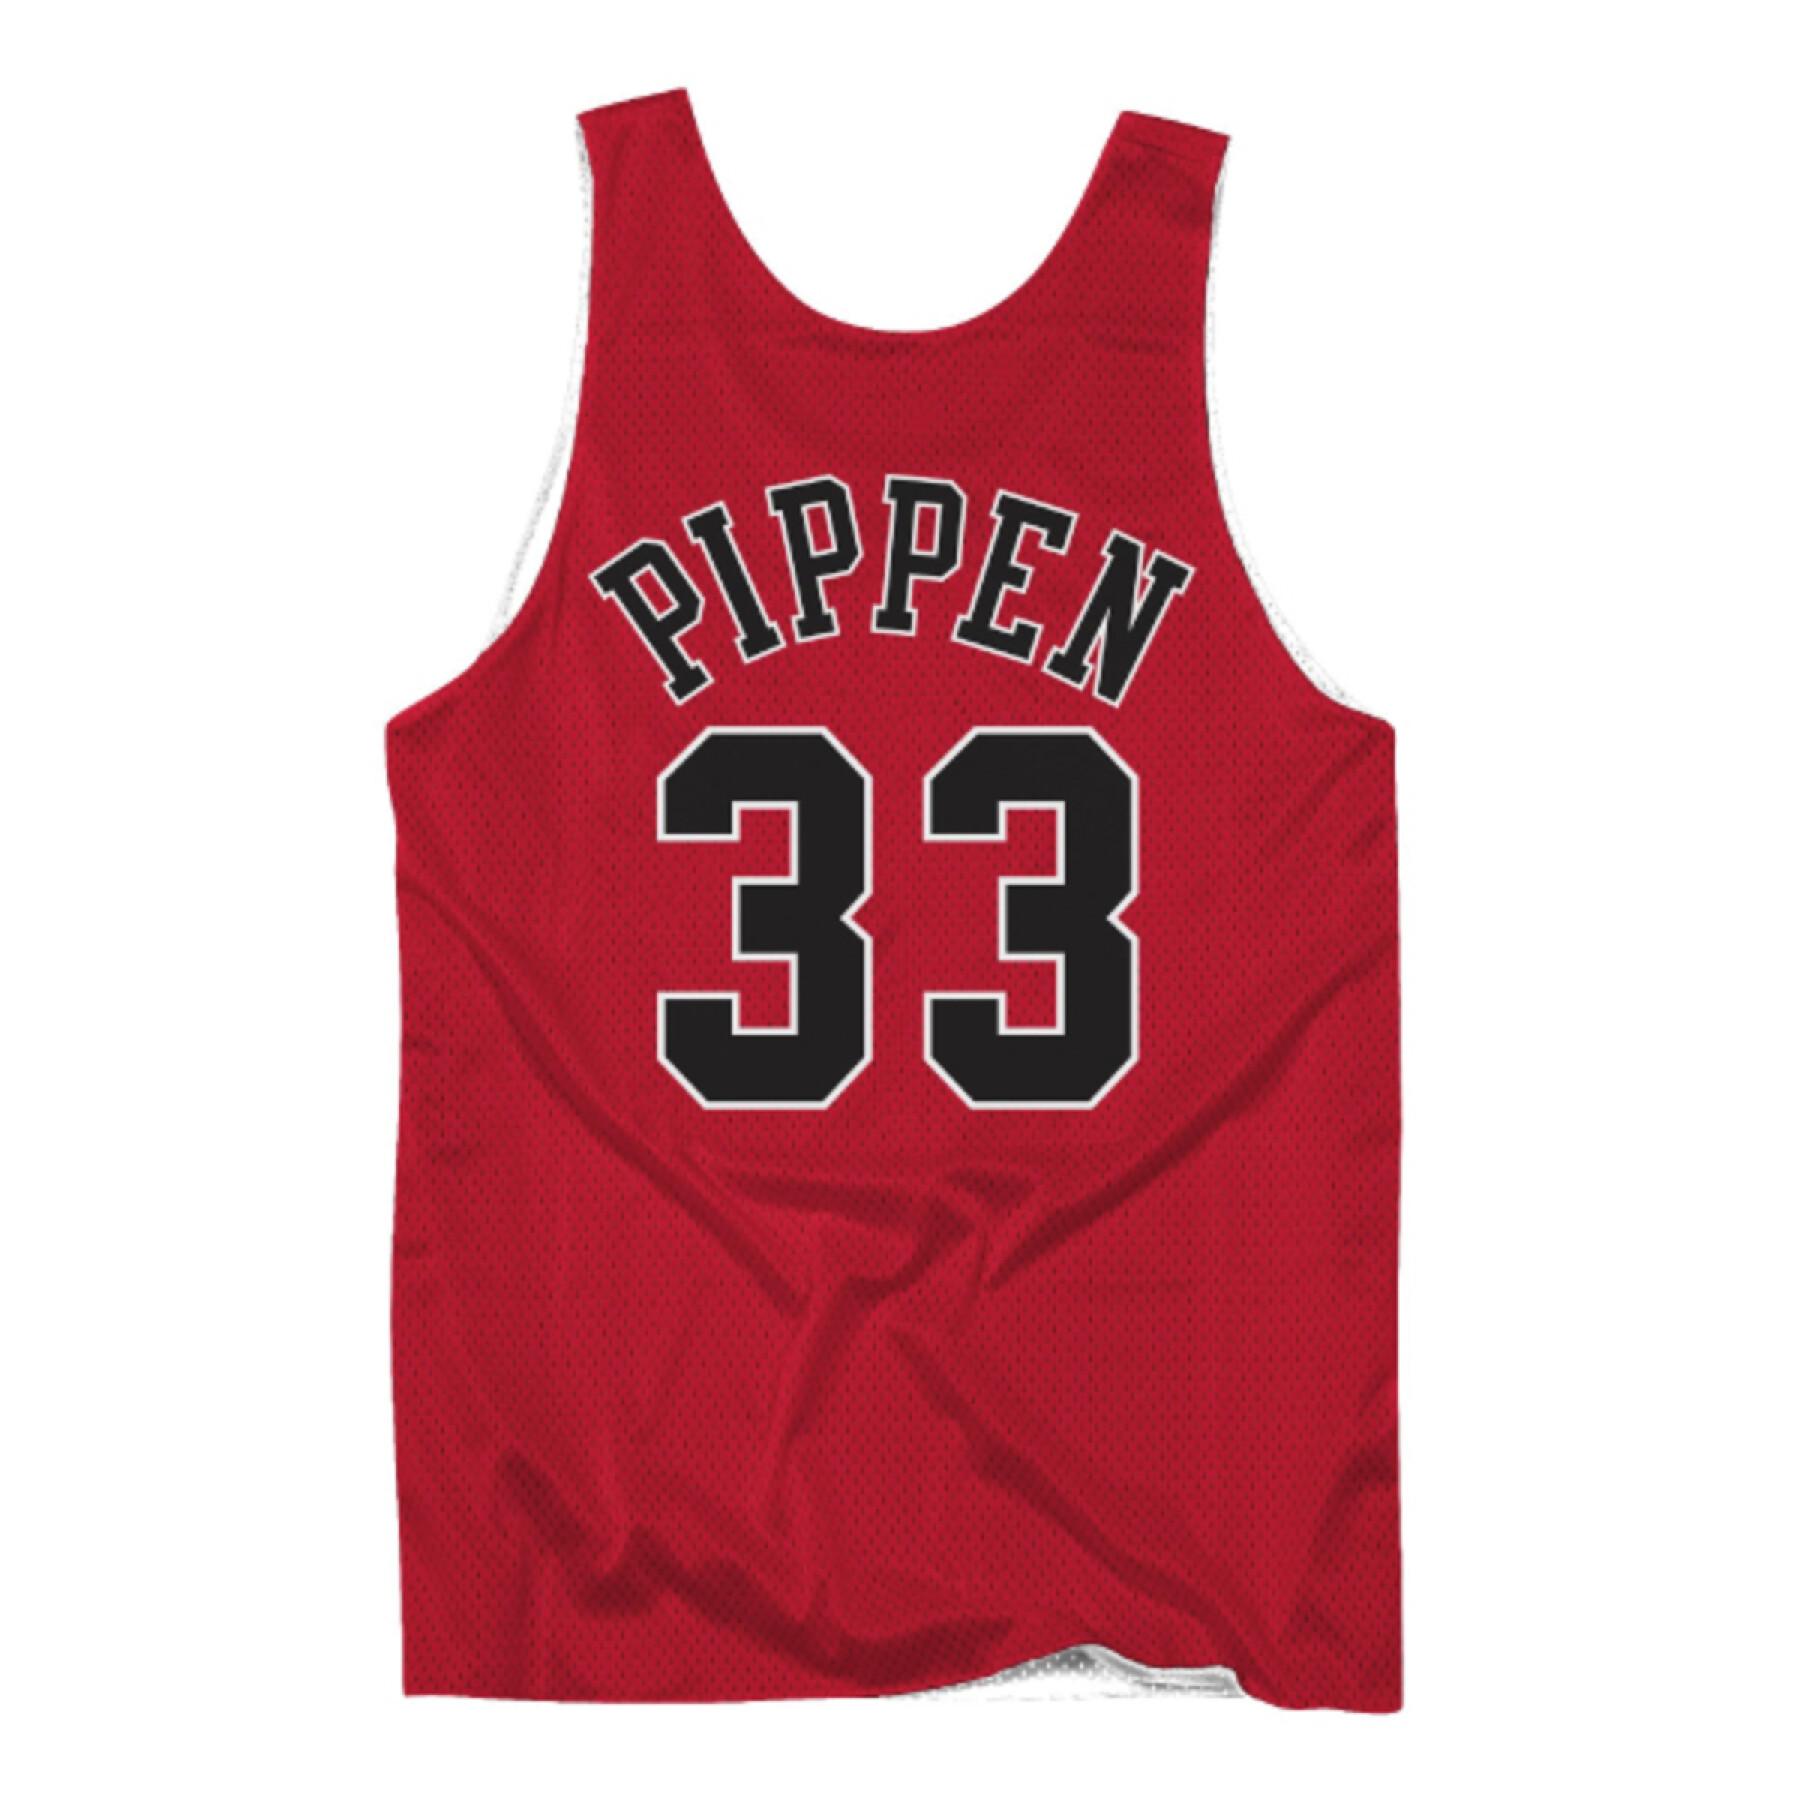 Jersey reversible Chicago Bulls Scottie Pippen 